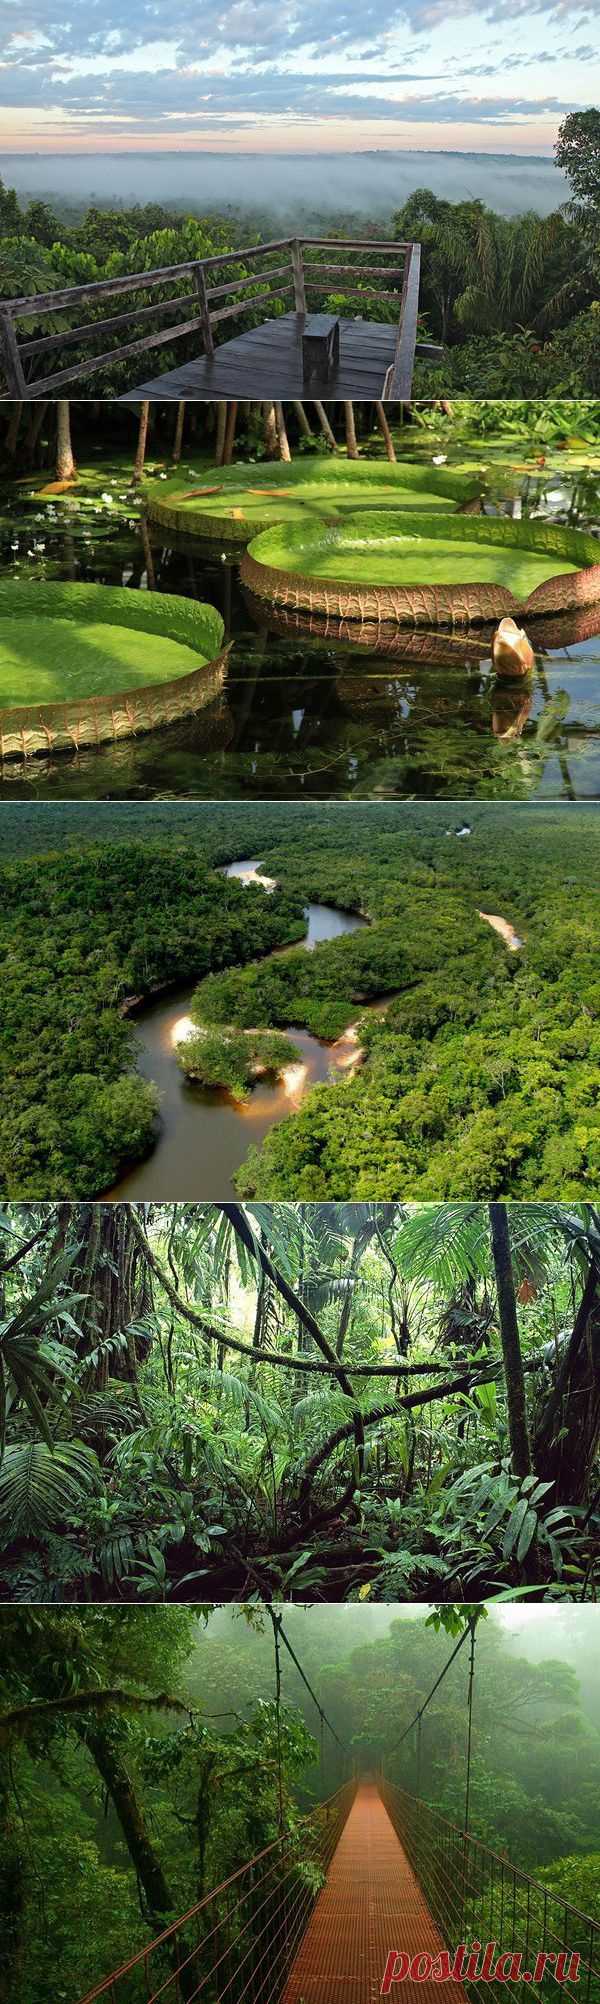 В джунглях Амазонки / Туристический спутник